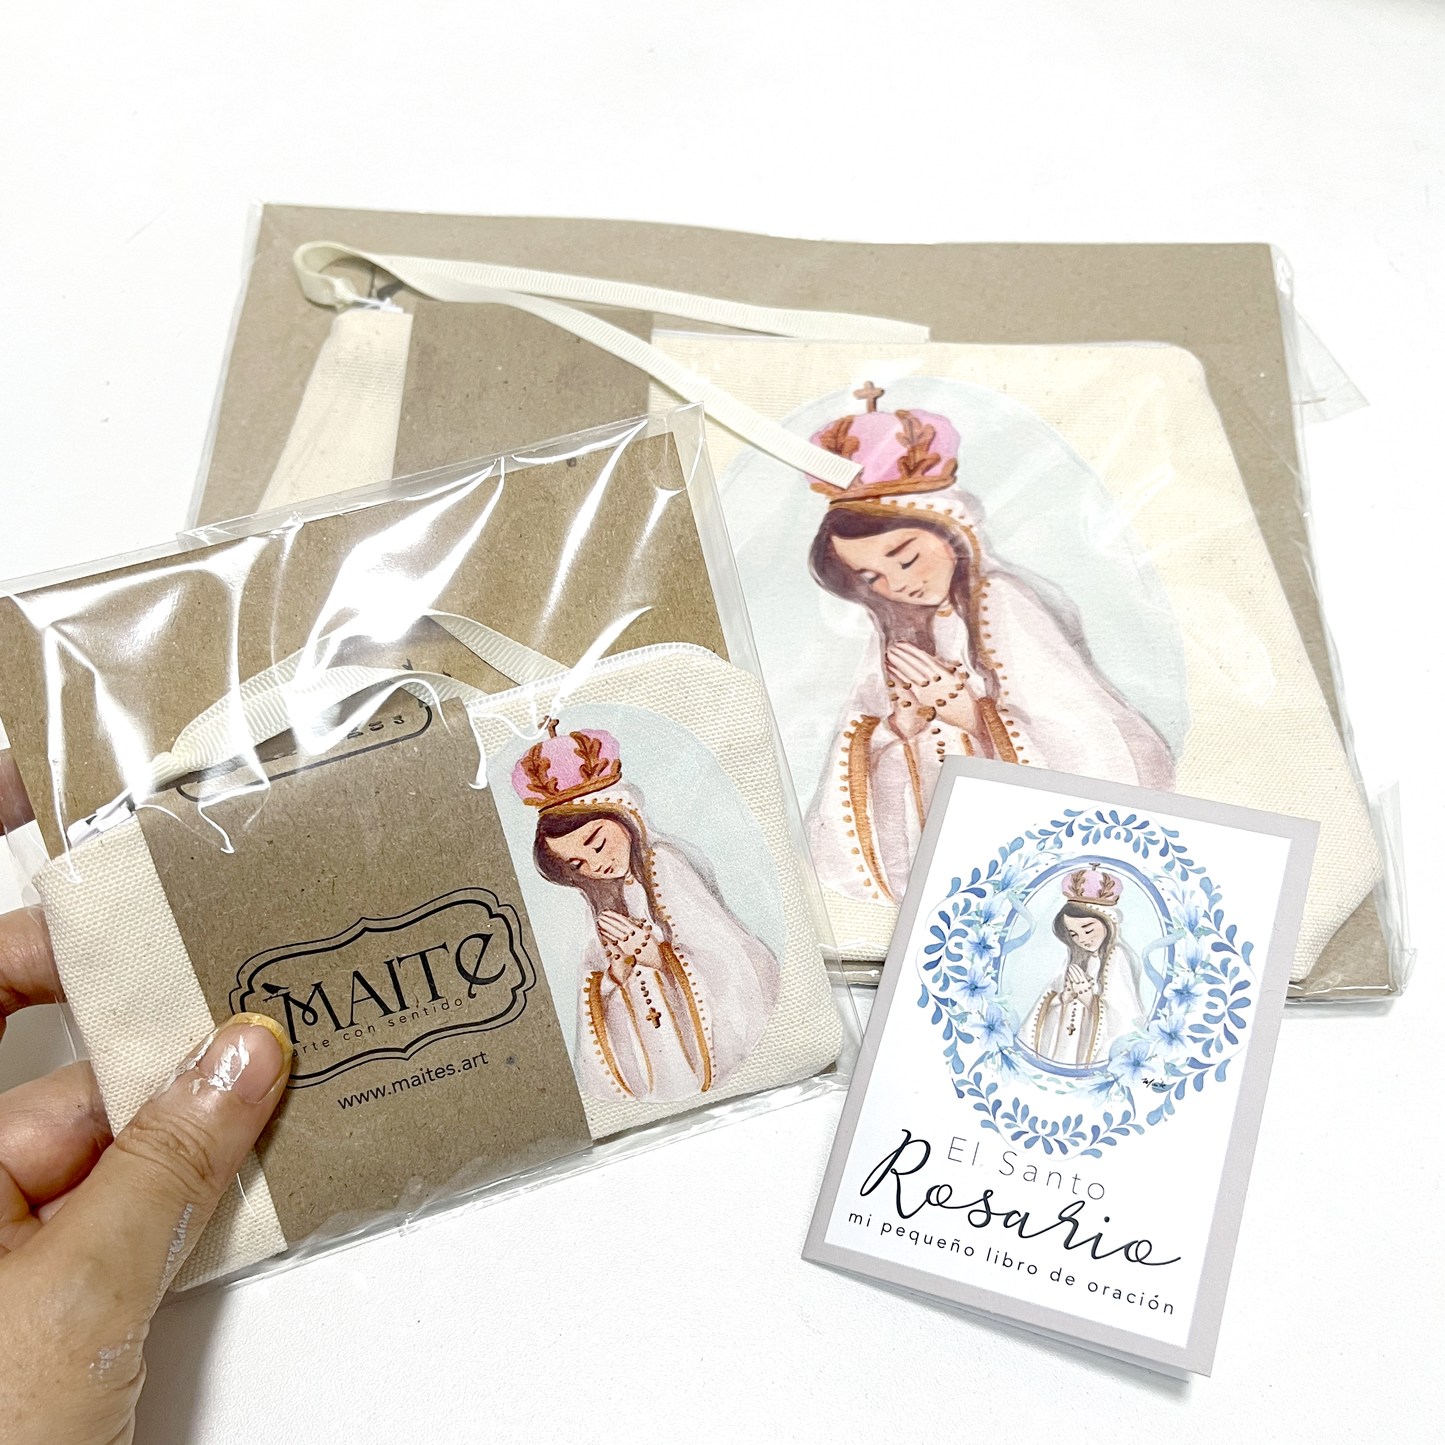 Cajita de Fe Rosas a Maria Set completo - Edición Limitada - Gift Box